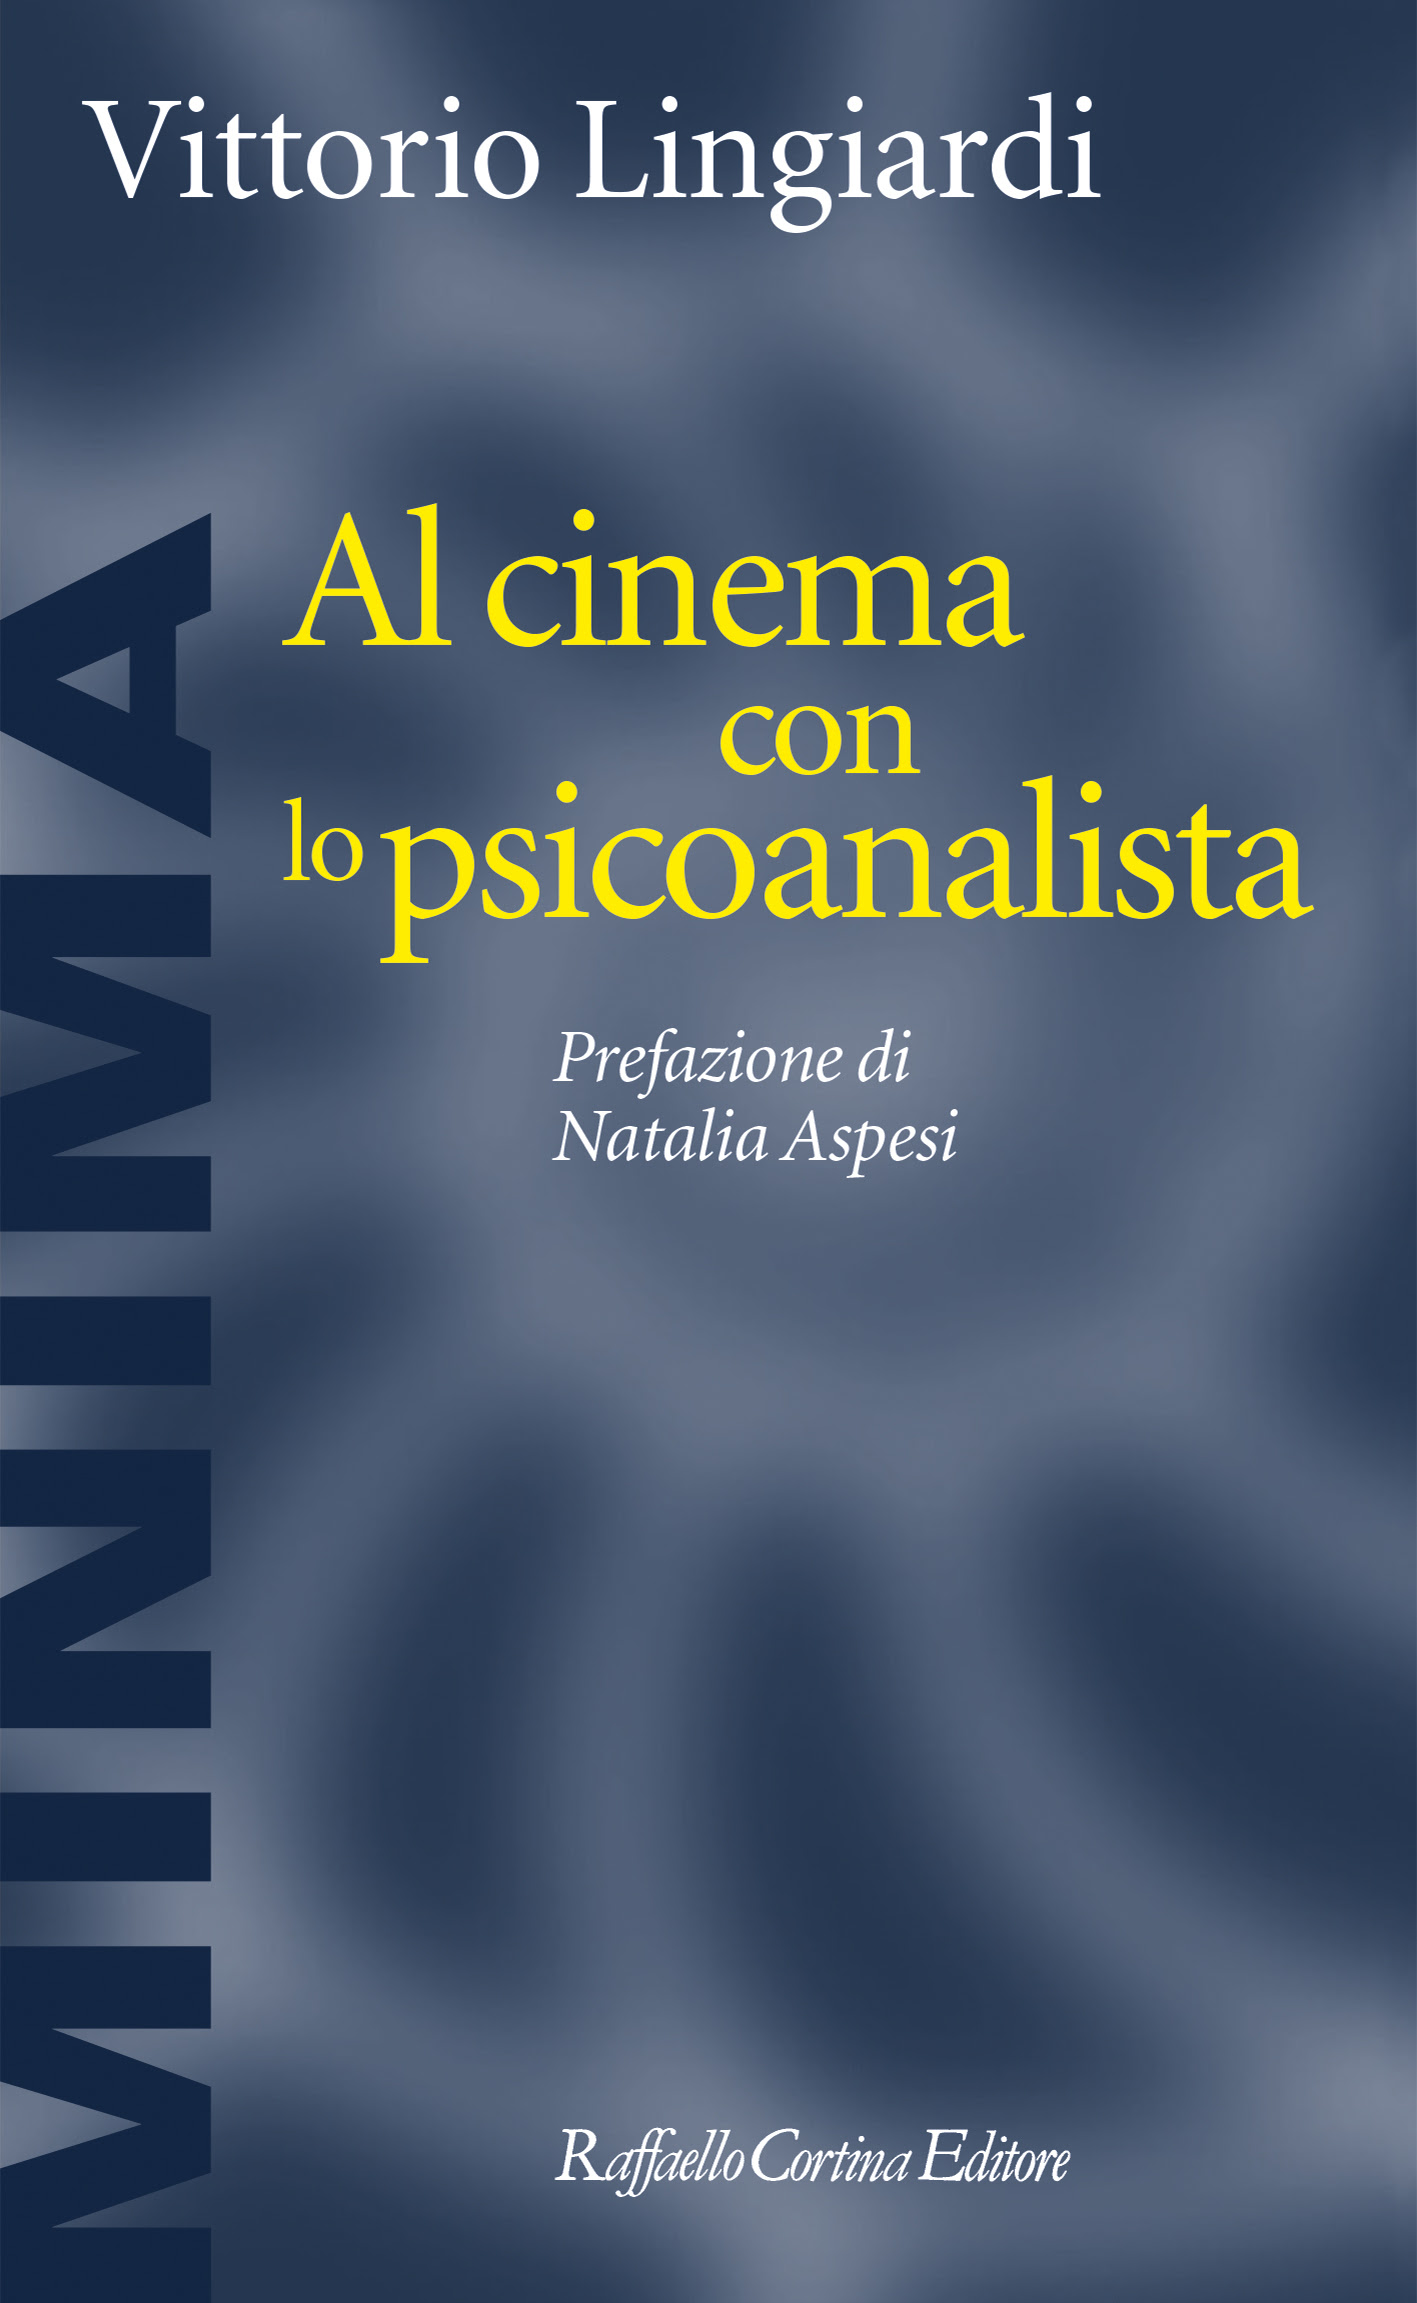 Vittorio Lingiardi - Al cinema con lo psicoanalista